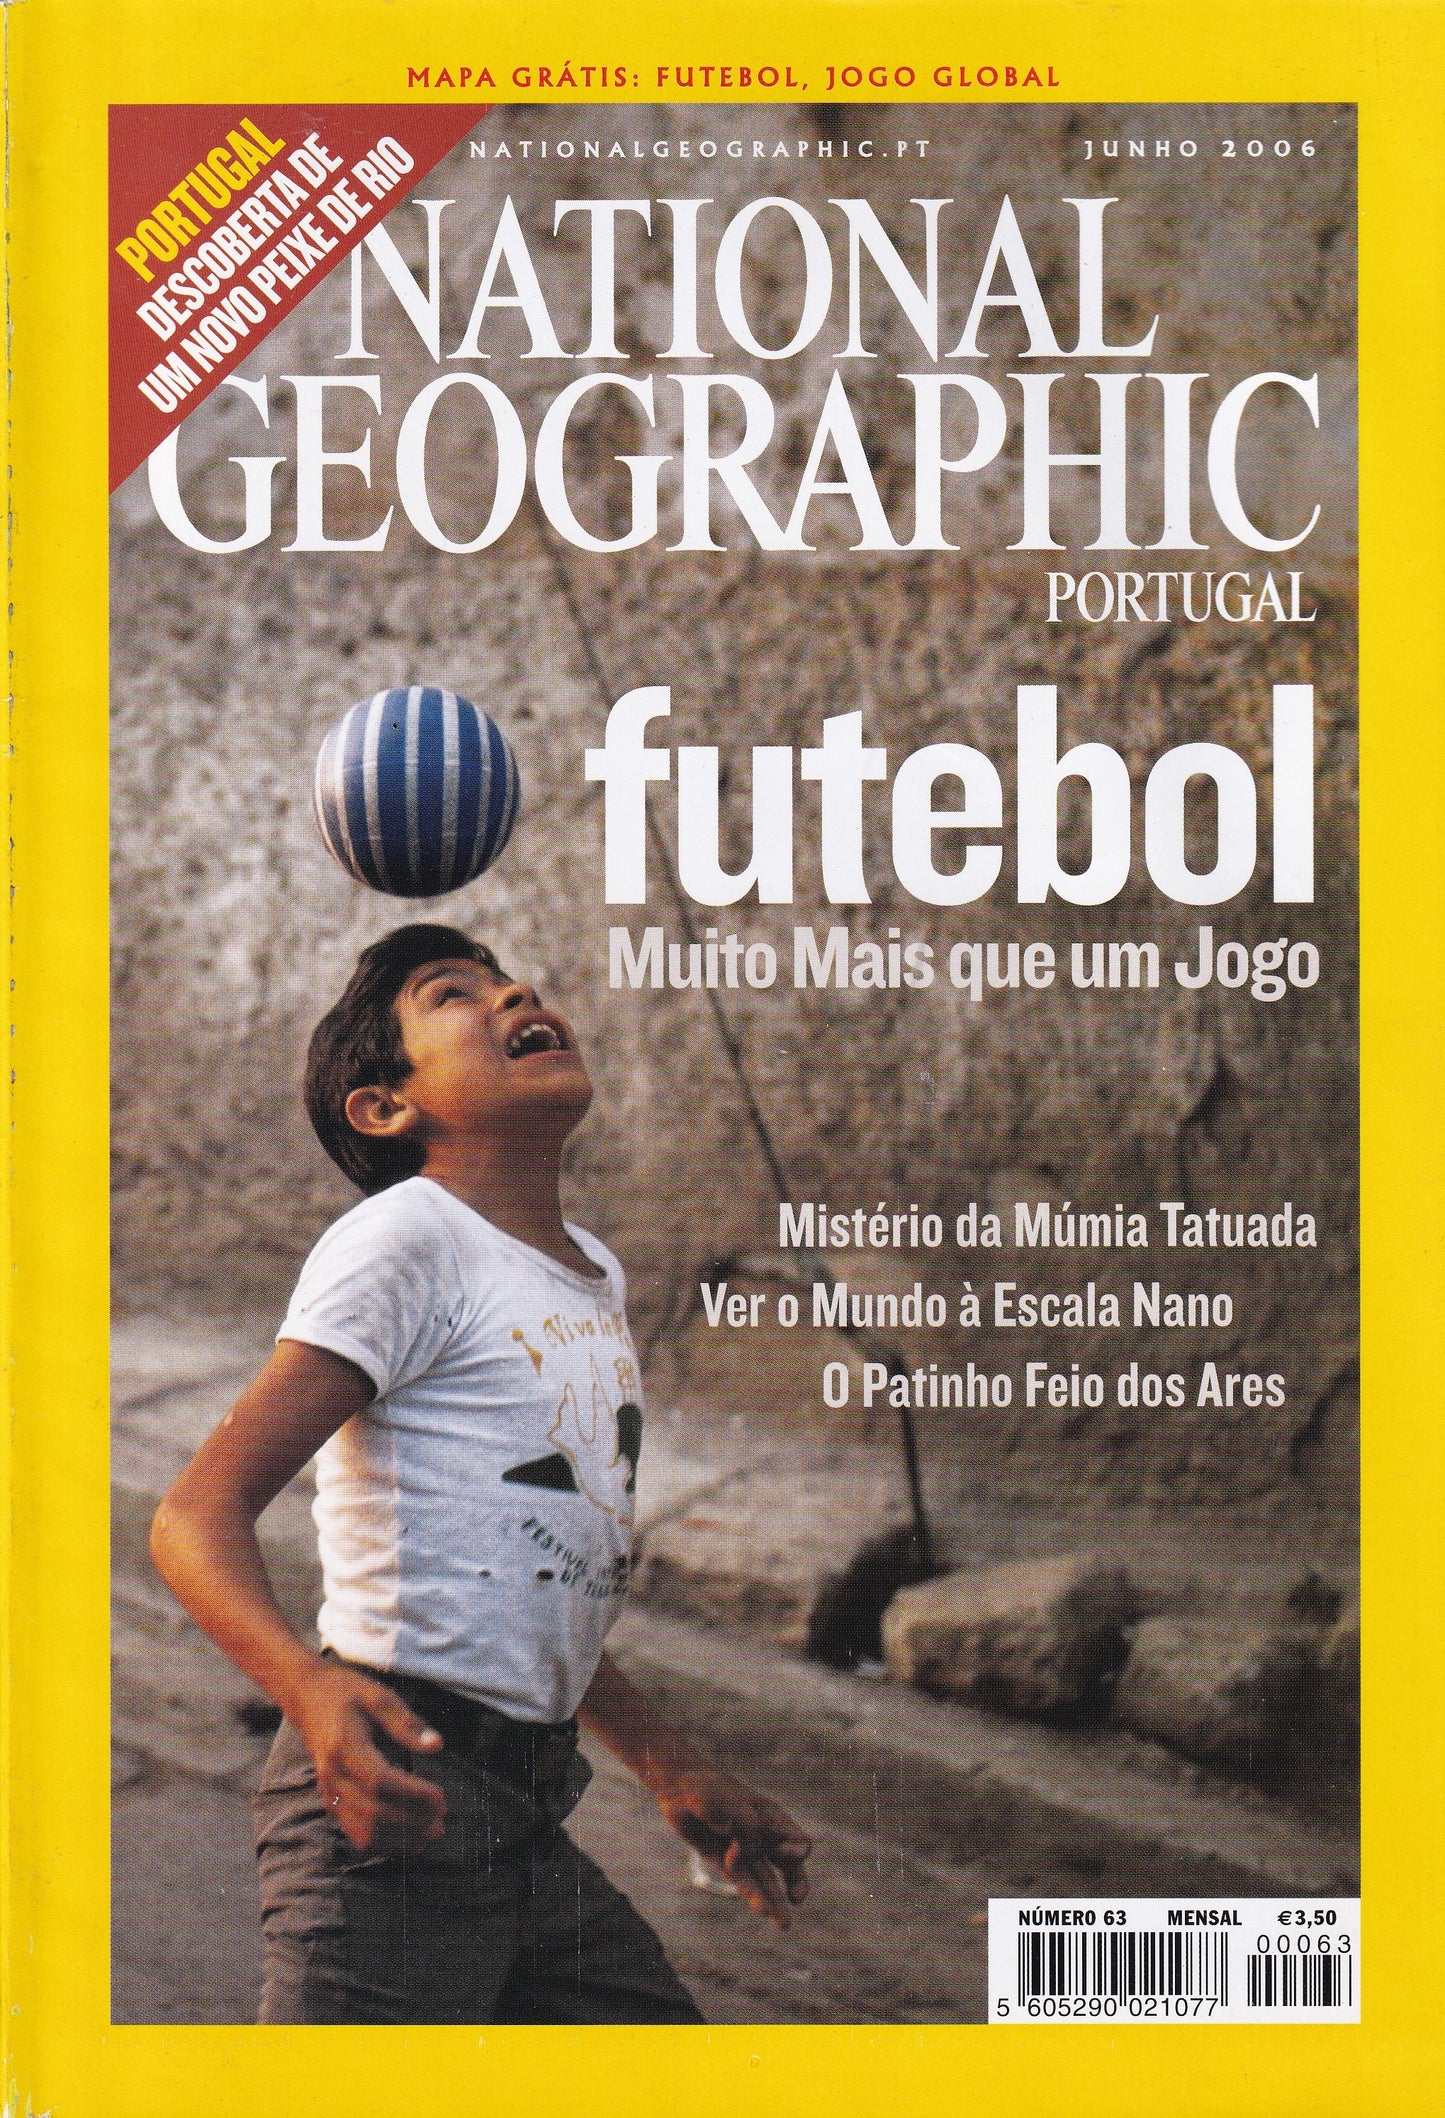 Revista National Geographic Portugal #63 (Futebol) Junho.2006 - USADO